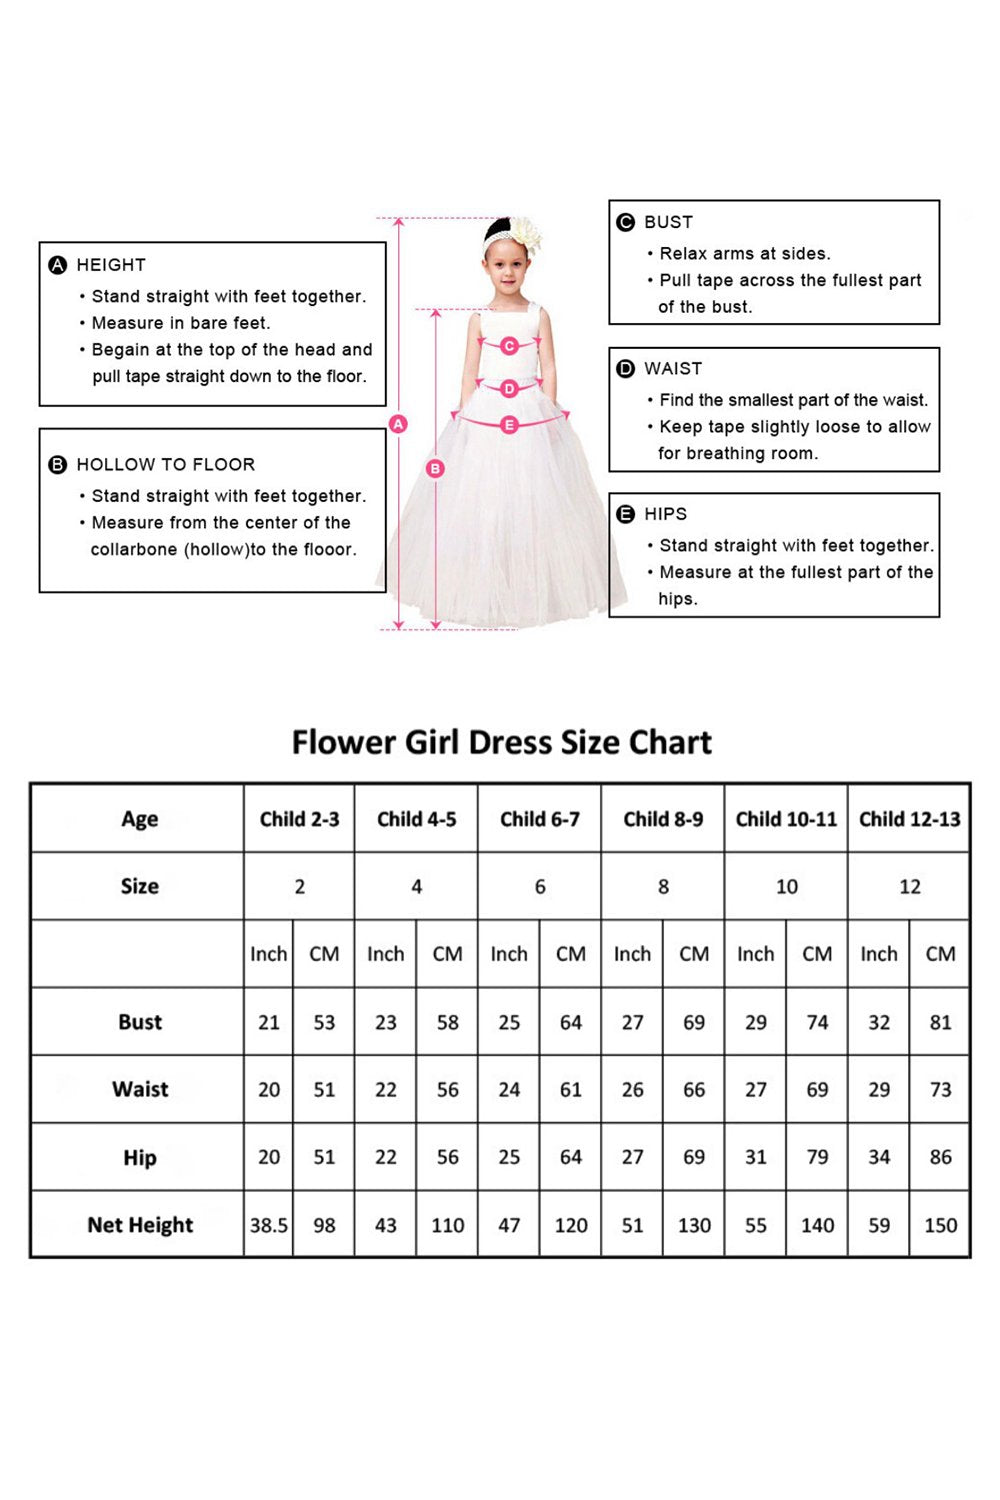 A-Line Tea Length Chiffon Flower Girl Dress CF0332